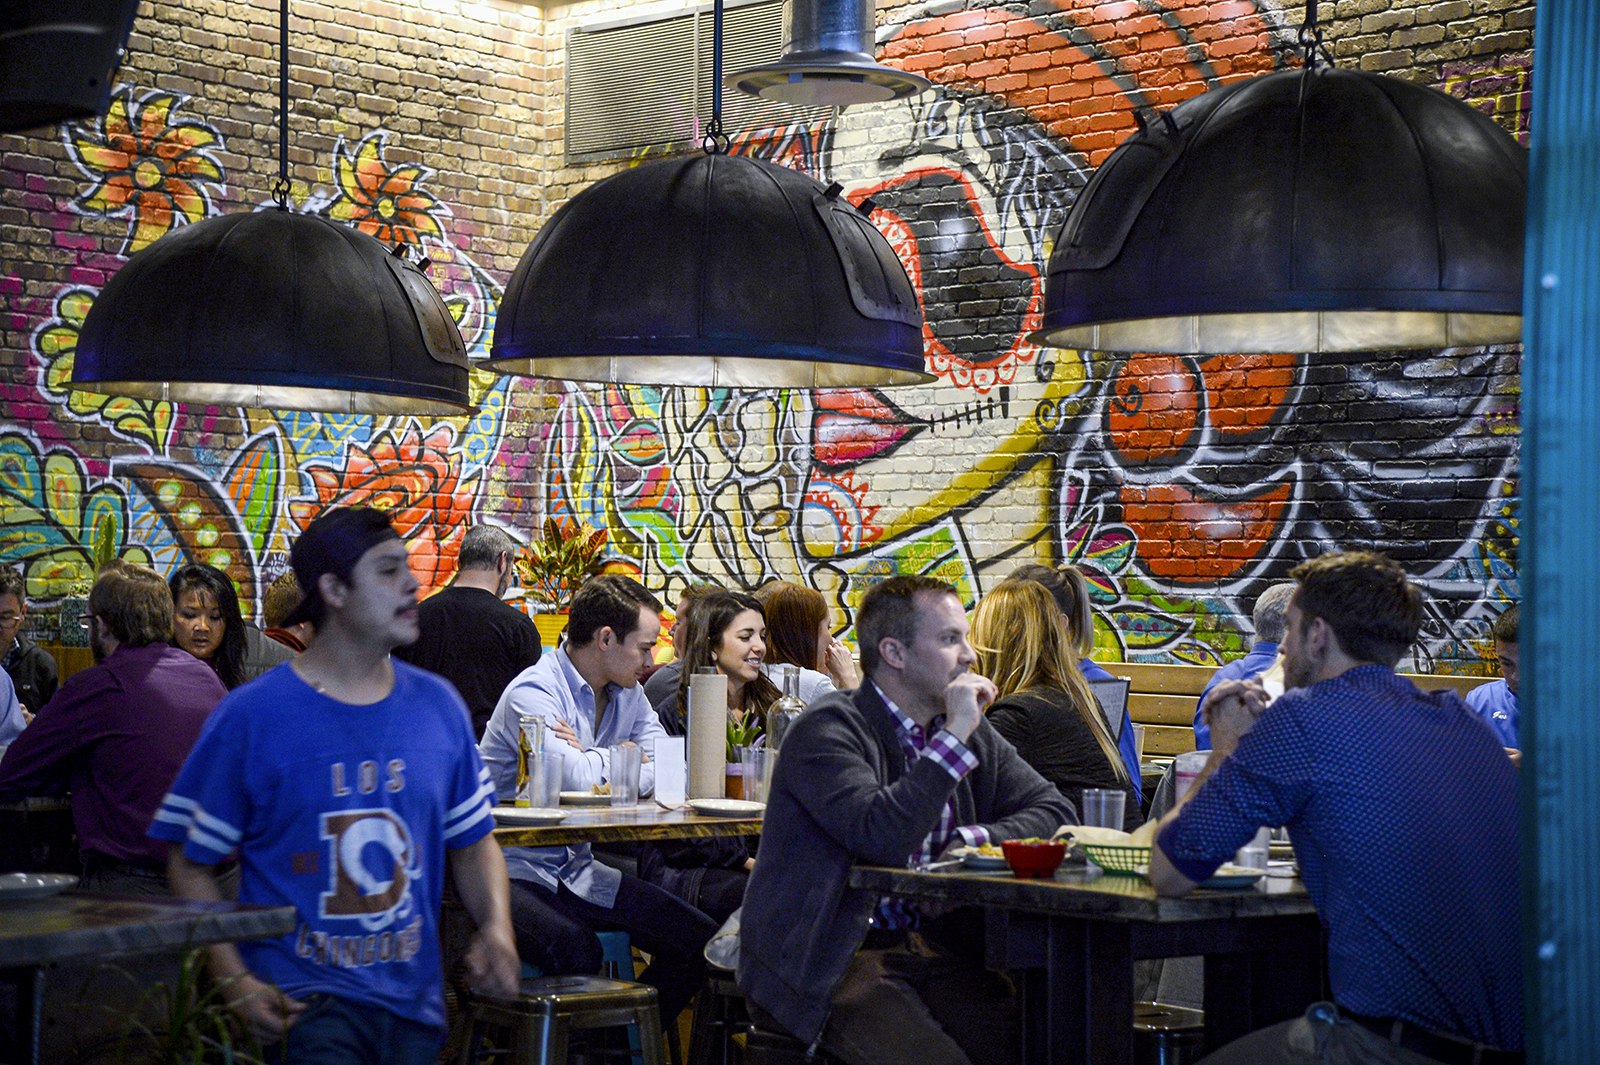 Människor njuter av tacos vid borden under tre paraplyformade lampor.  Väggen är i tegel och målad med en färgglad väggmålning som föreställer en person som bär sockersmink.  Denver, Colorado.